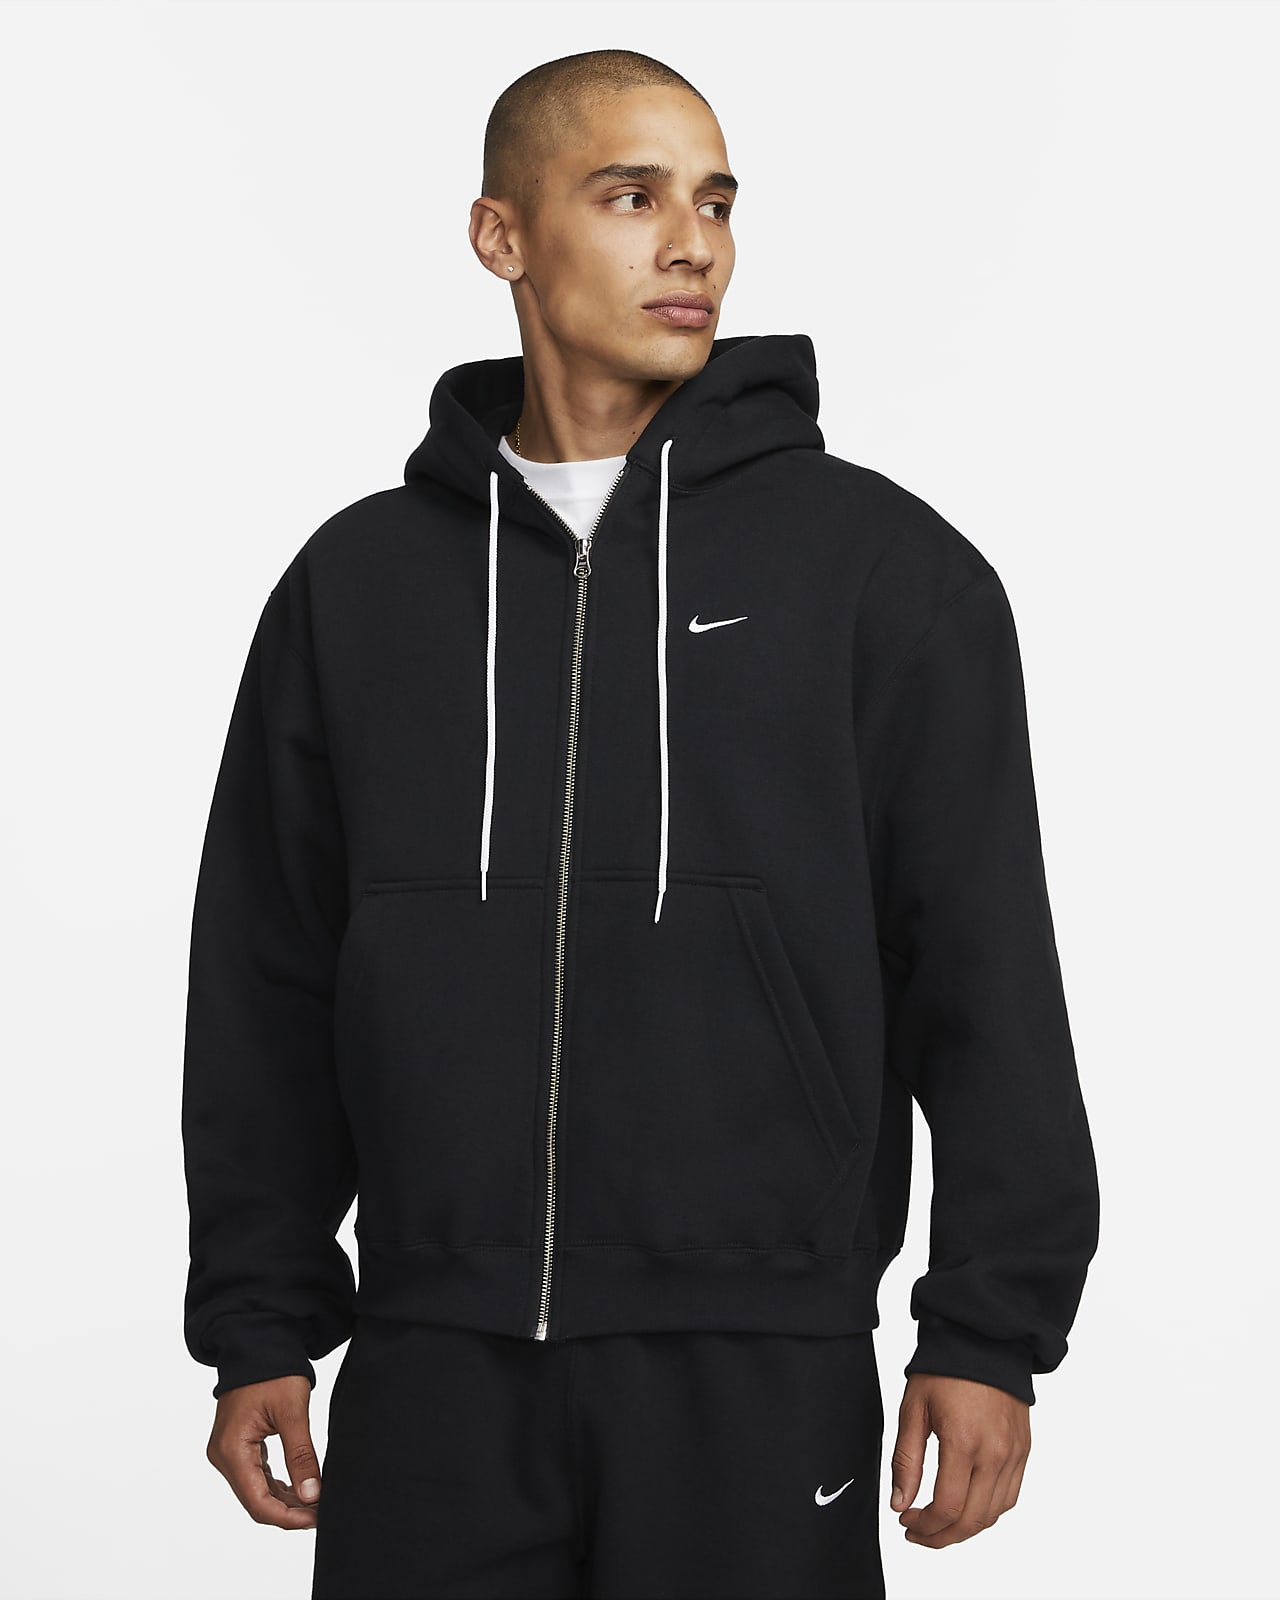 Implementeren gazon Ongeautoriseerd Nike "Made in the USA" Men's Full-Zip Hoodie. Nike.com